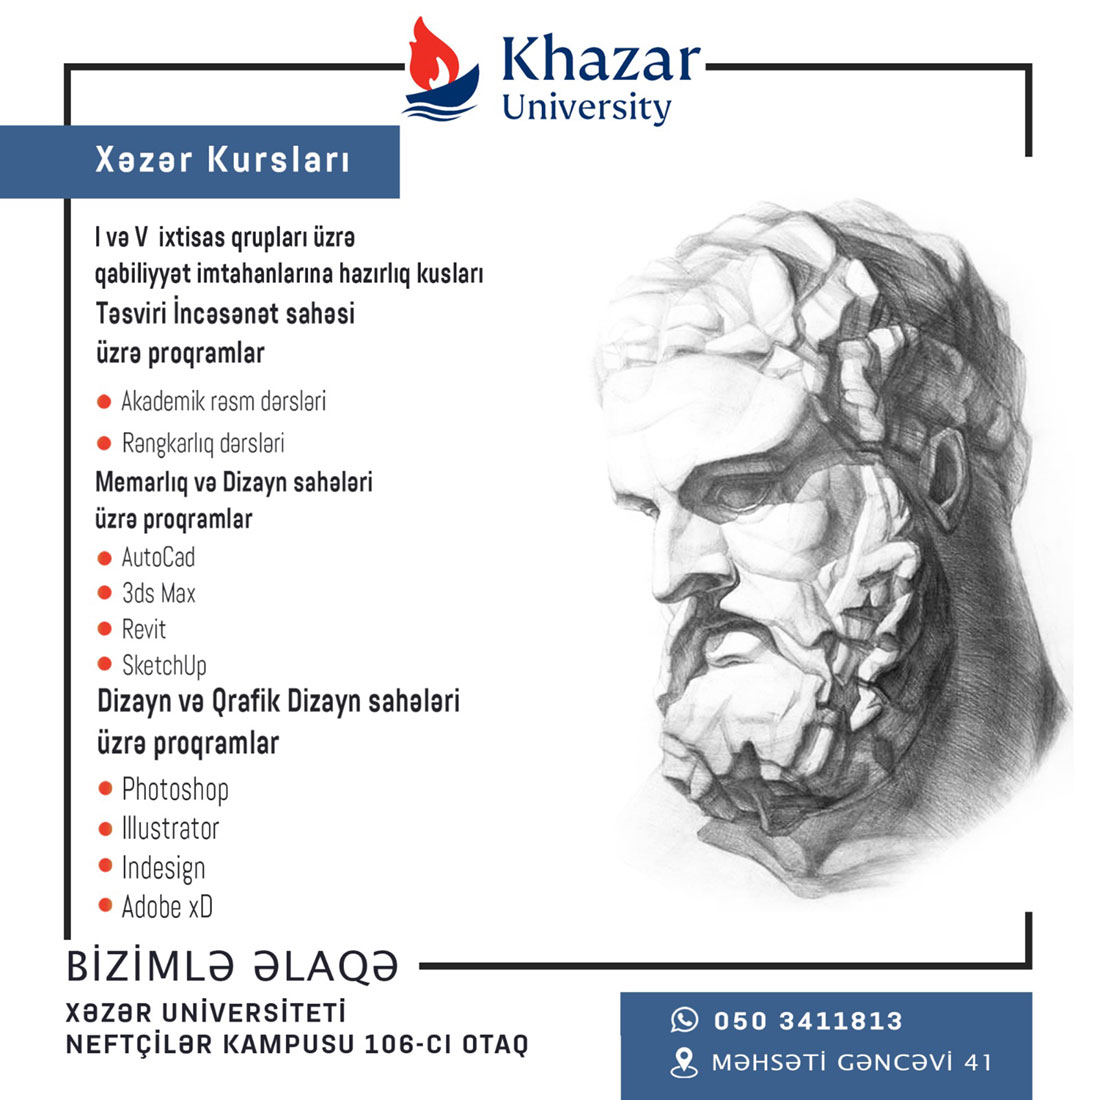 Khazar Art courses are starting at Khazar University.